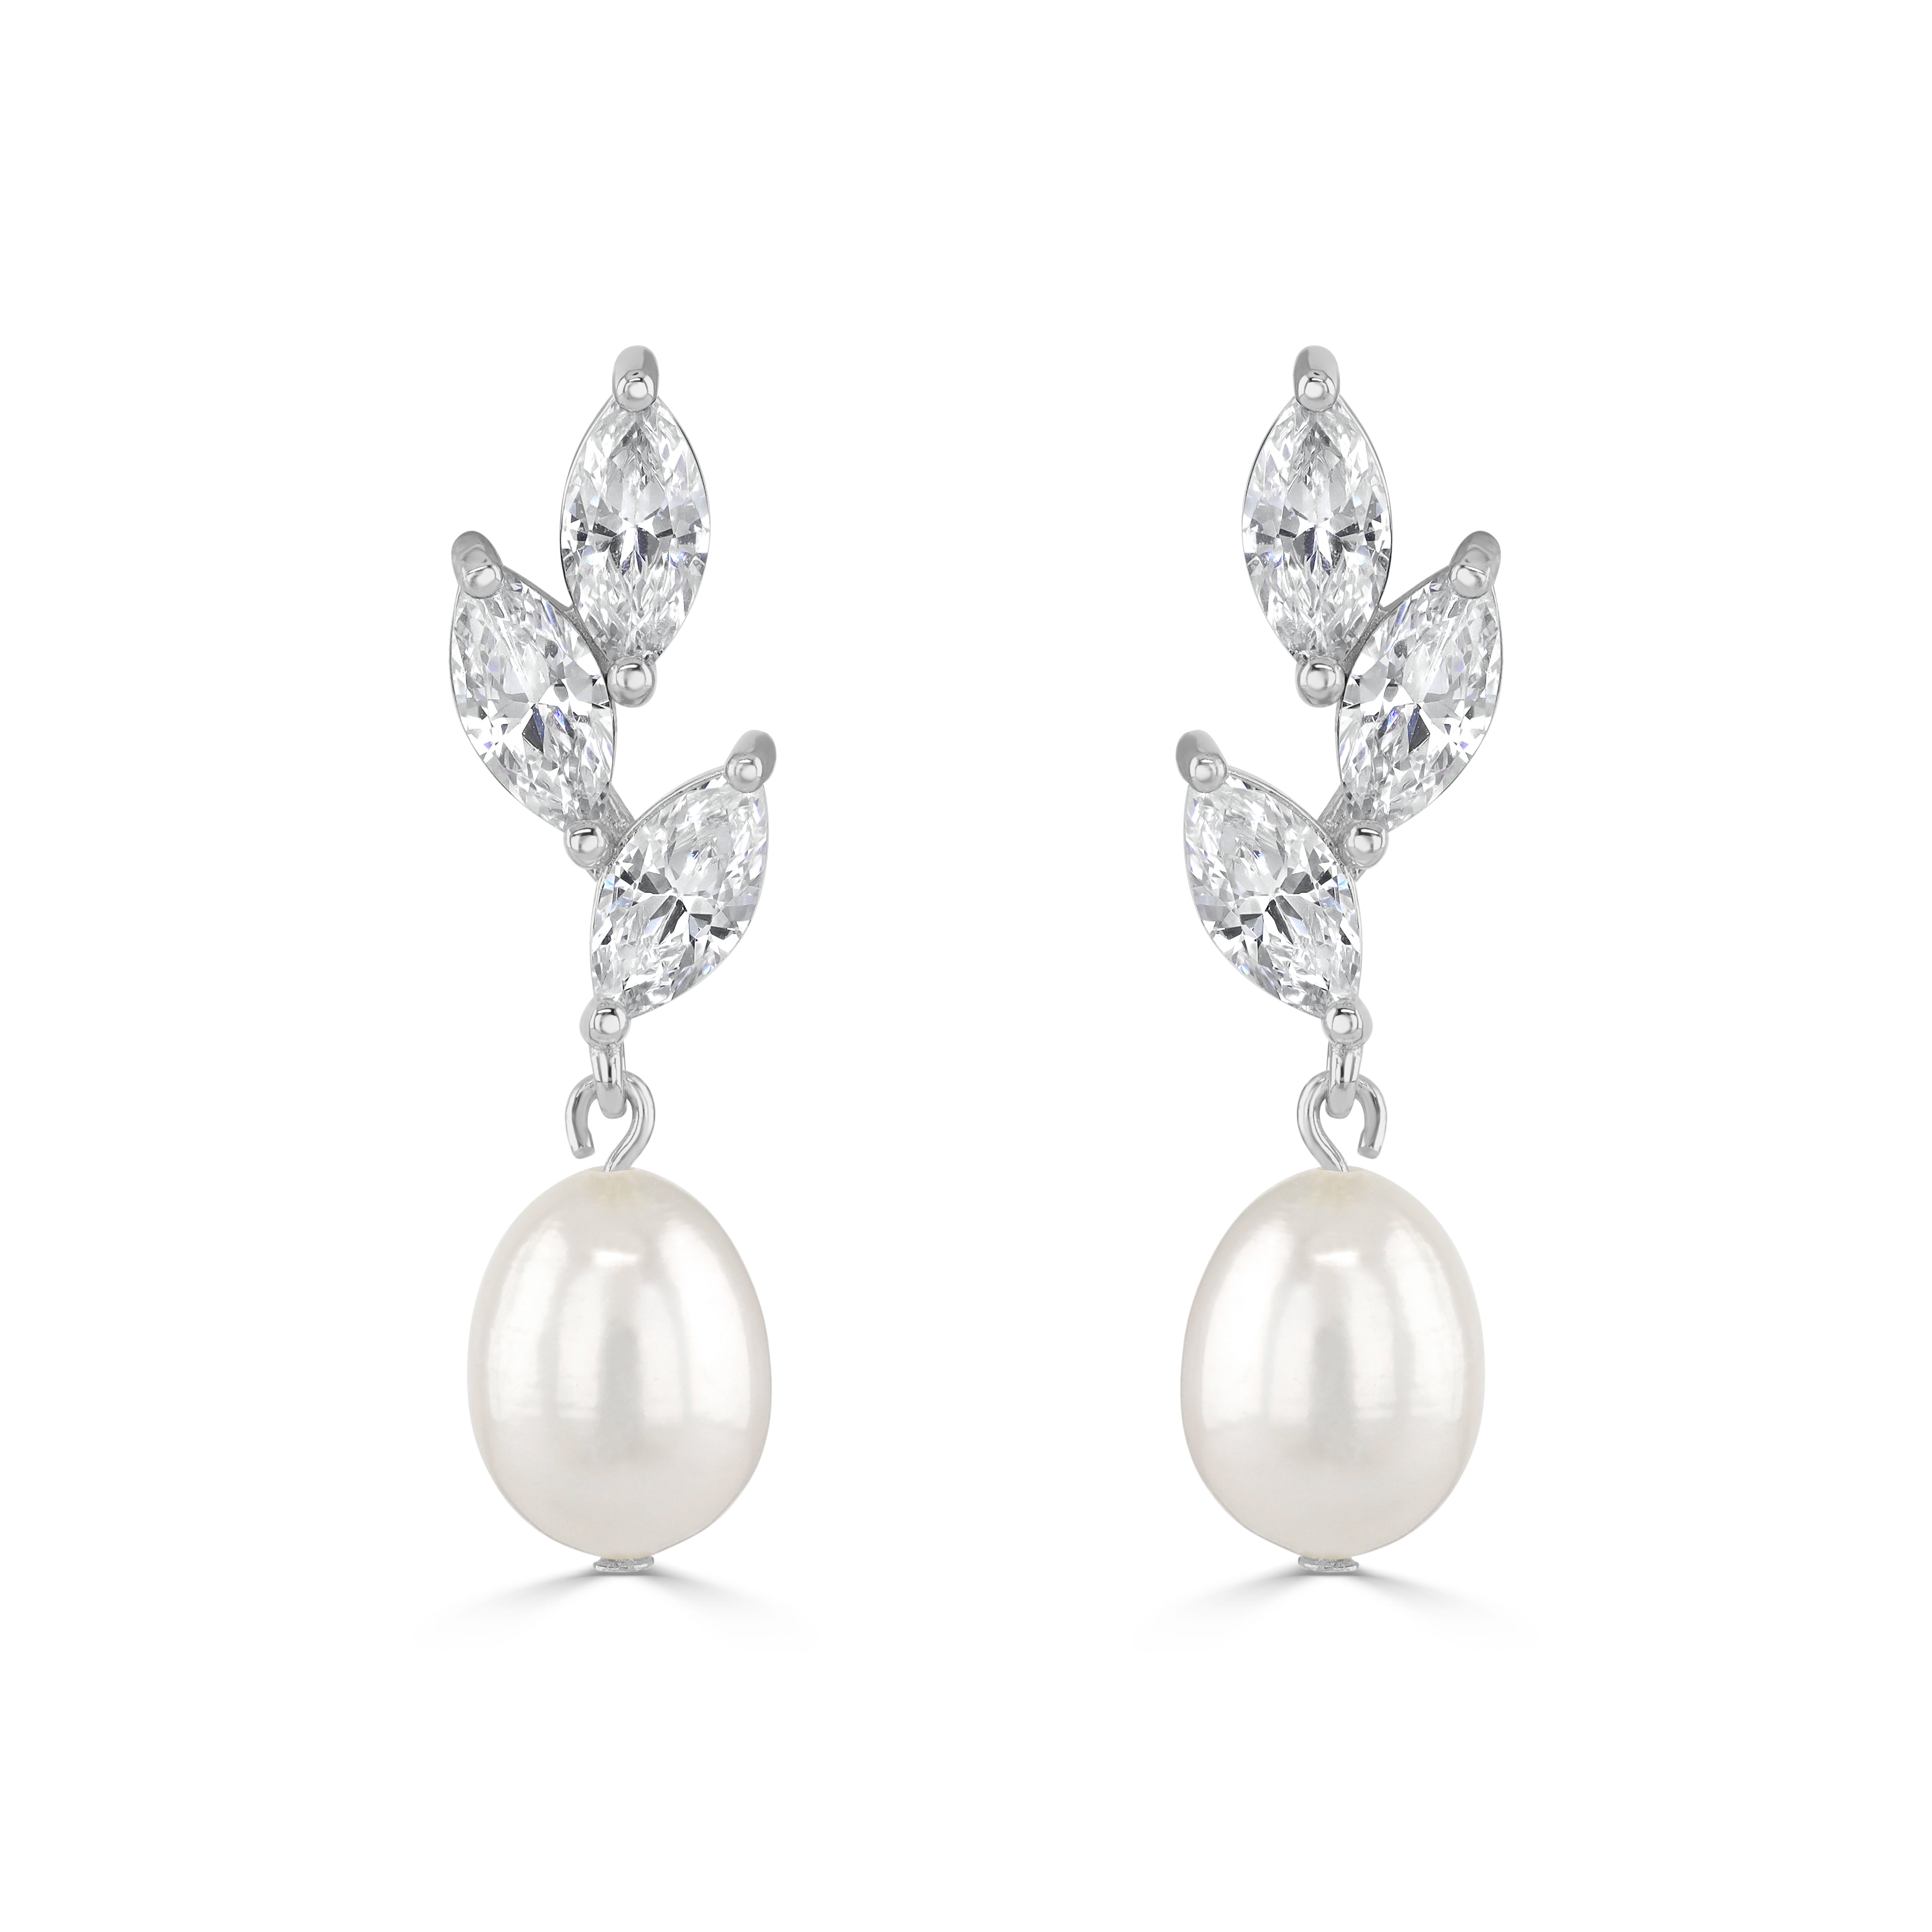 ERYN // Dainty silver cubic zirconia and pearl drop earrings